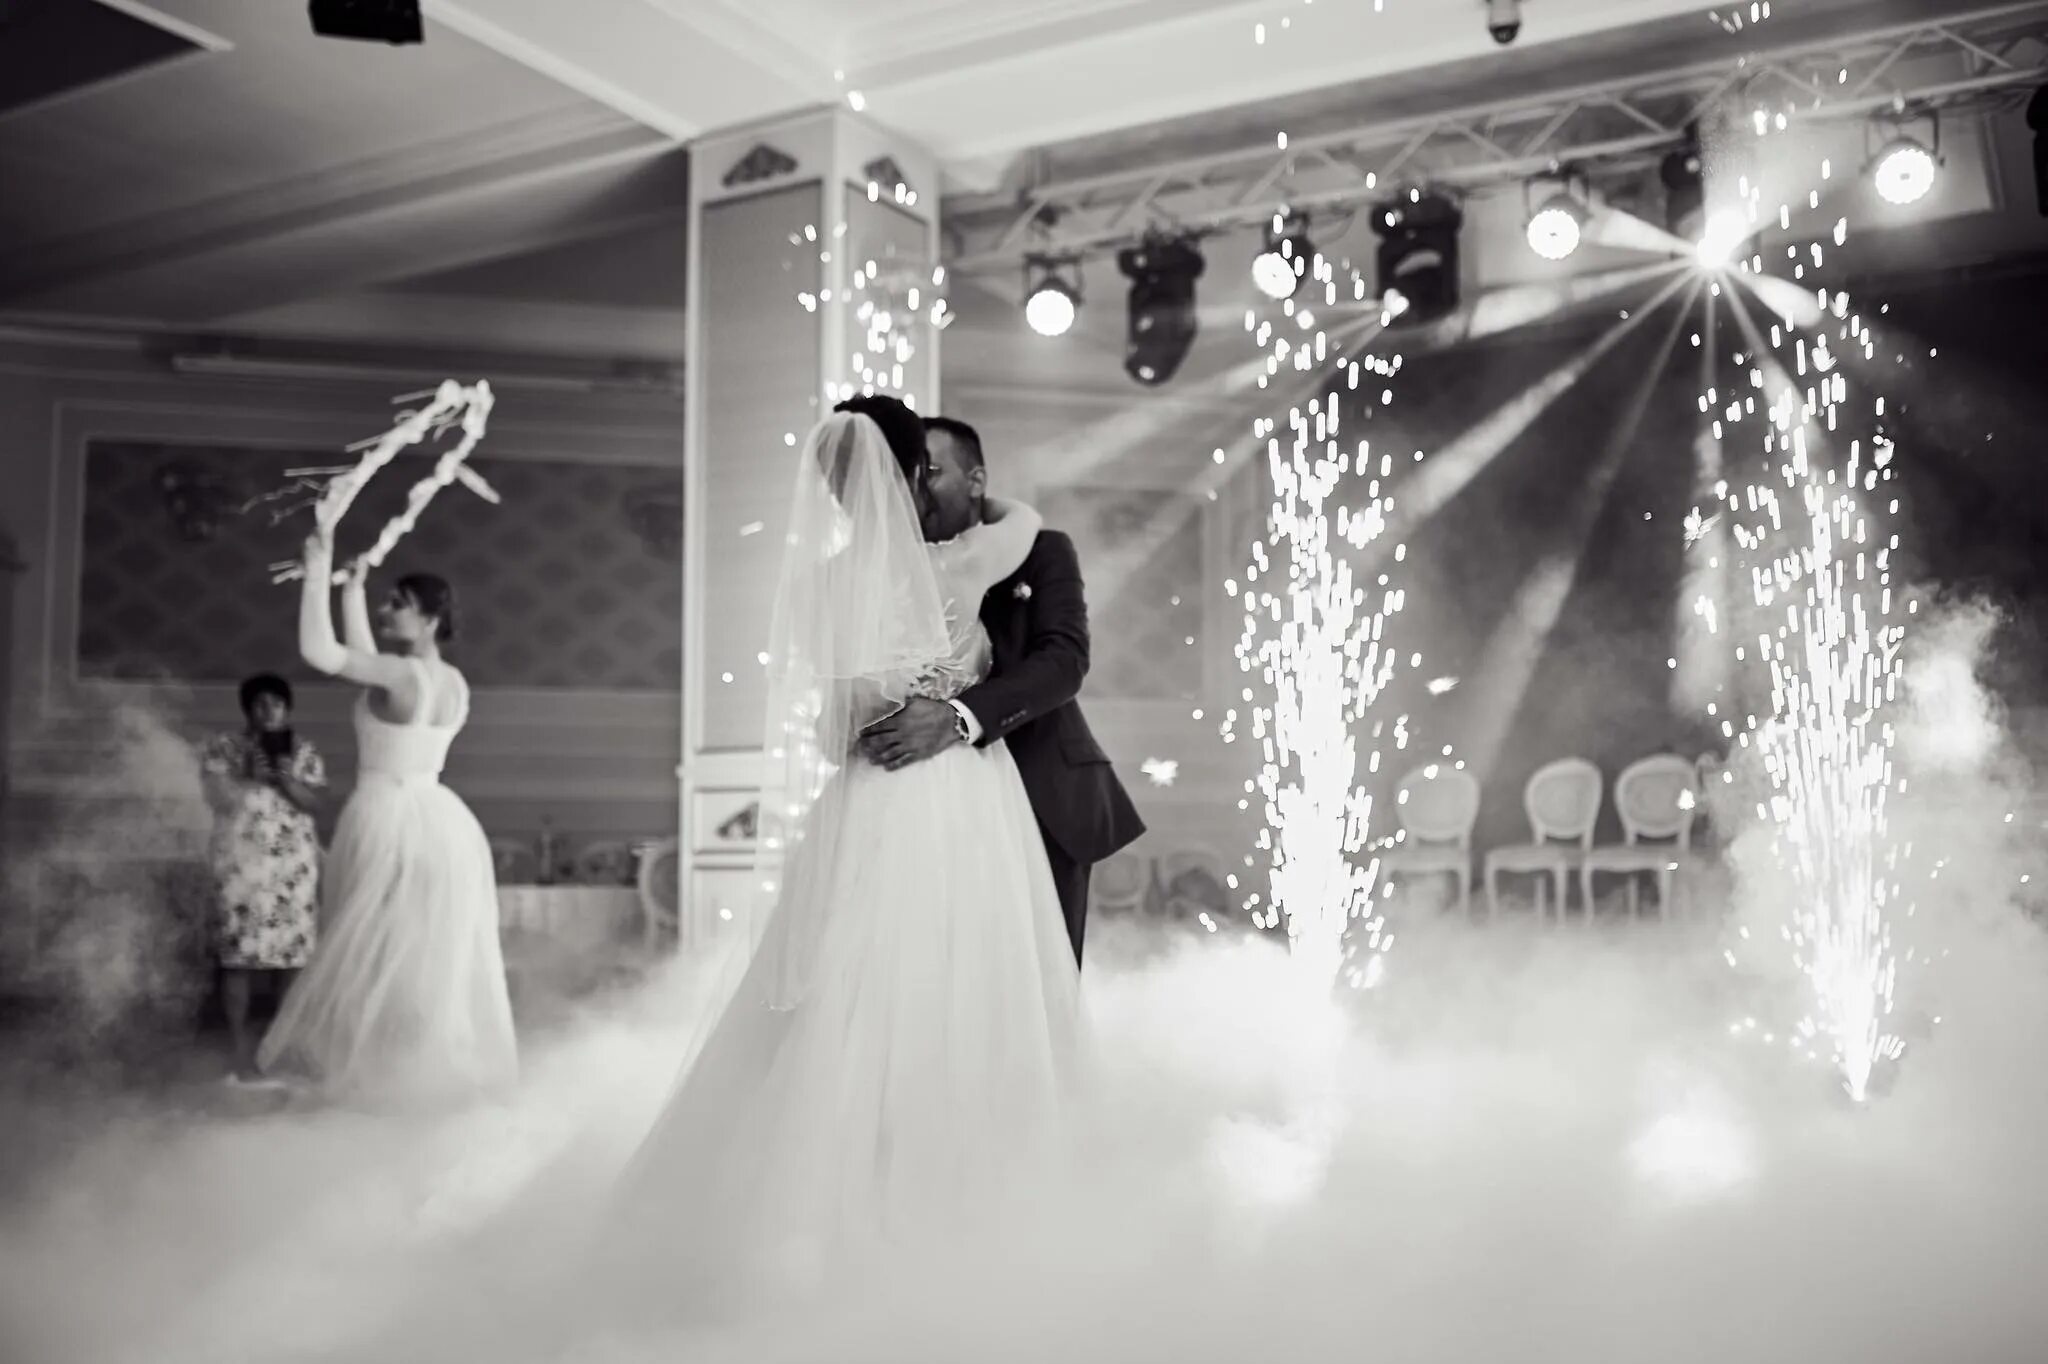 Свадебный танец молодоженов. Первый танец молодых на свадьбе. Свадебный танец в дыму. Спецэффекты для свадебного танца молодоженов.